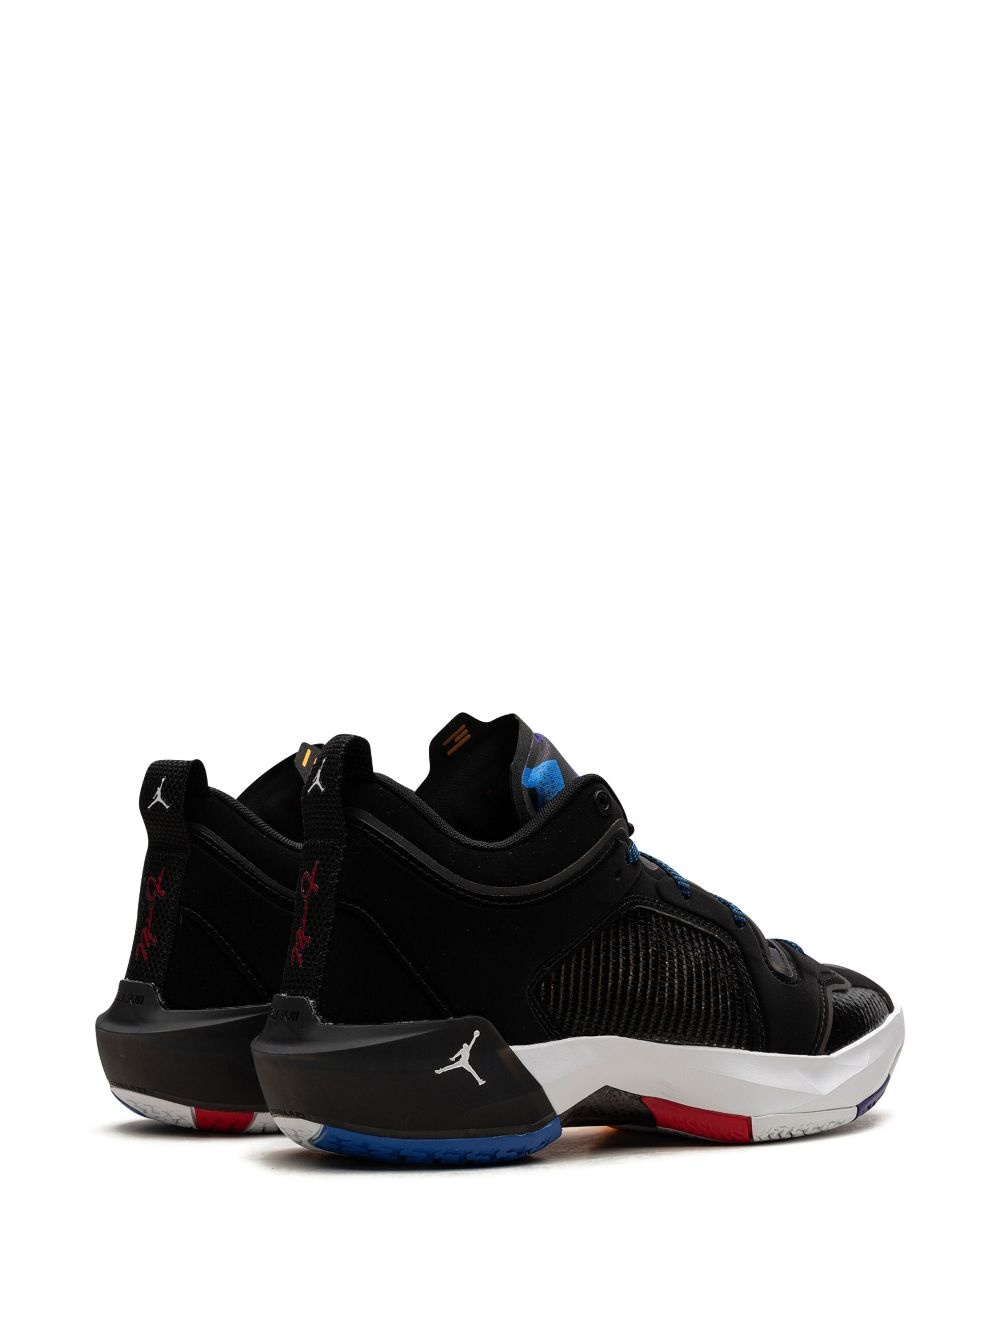 Air Jordan XXXVII "Nothing But Net" sneakers - 3